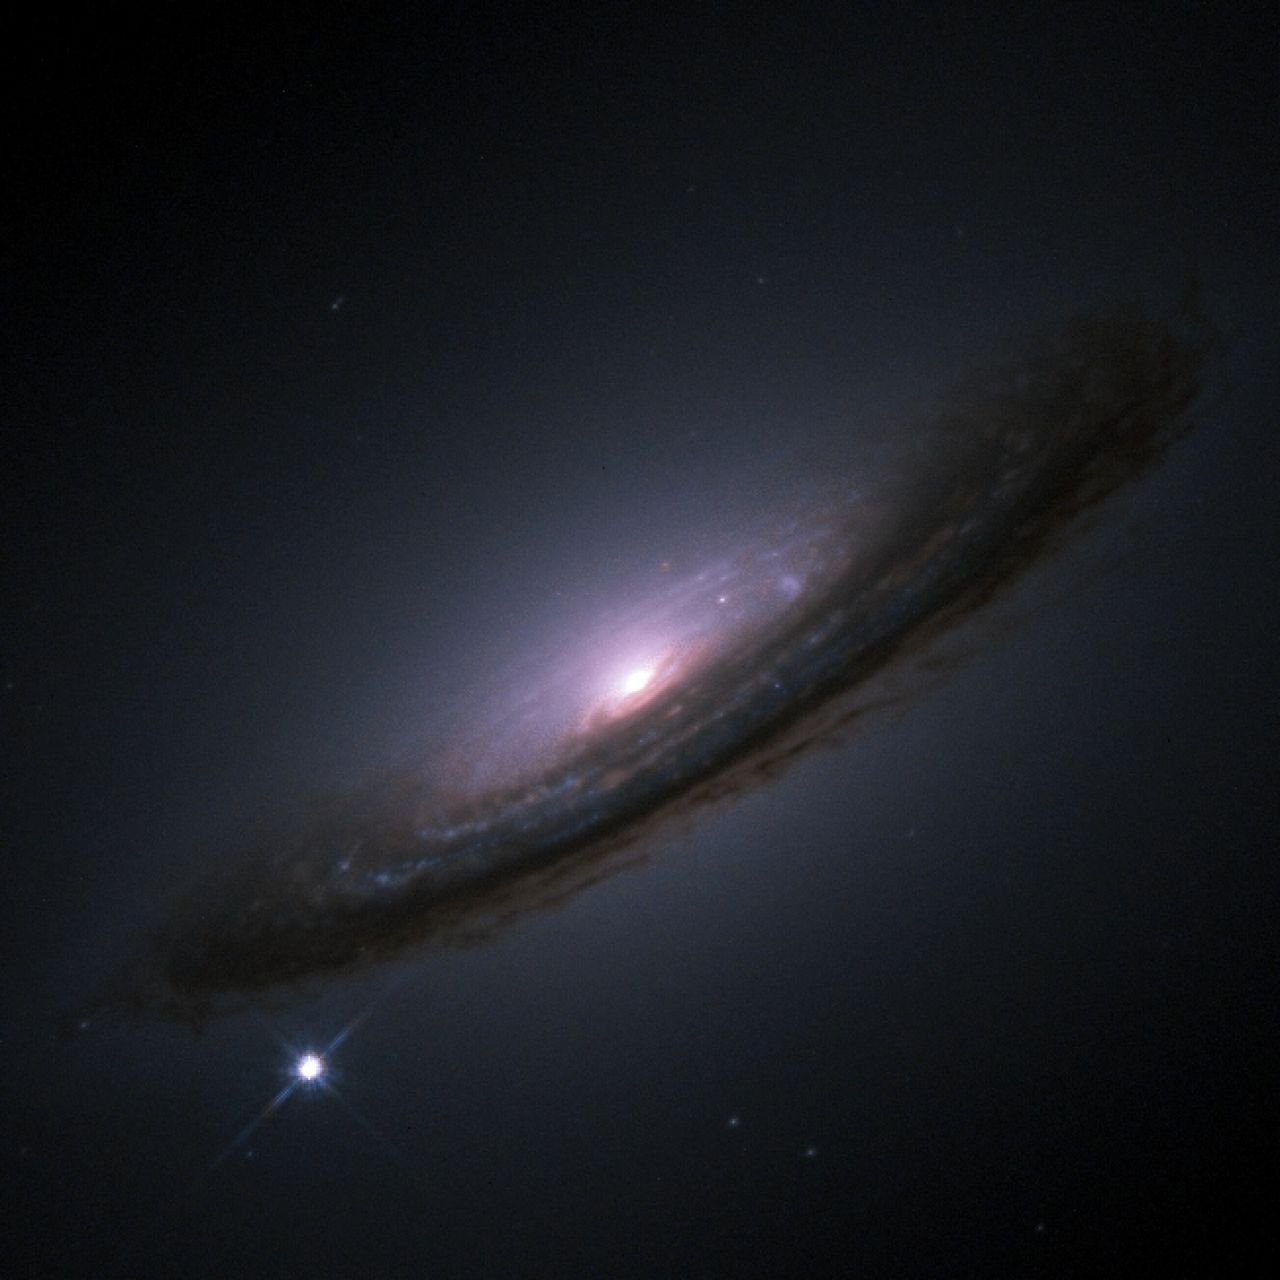 Νέα μαύρη τρύπα καταγράφηκε στο διάστημα: «Δεν υπήρχε εκεί προηγουμένως»